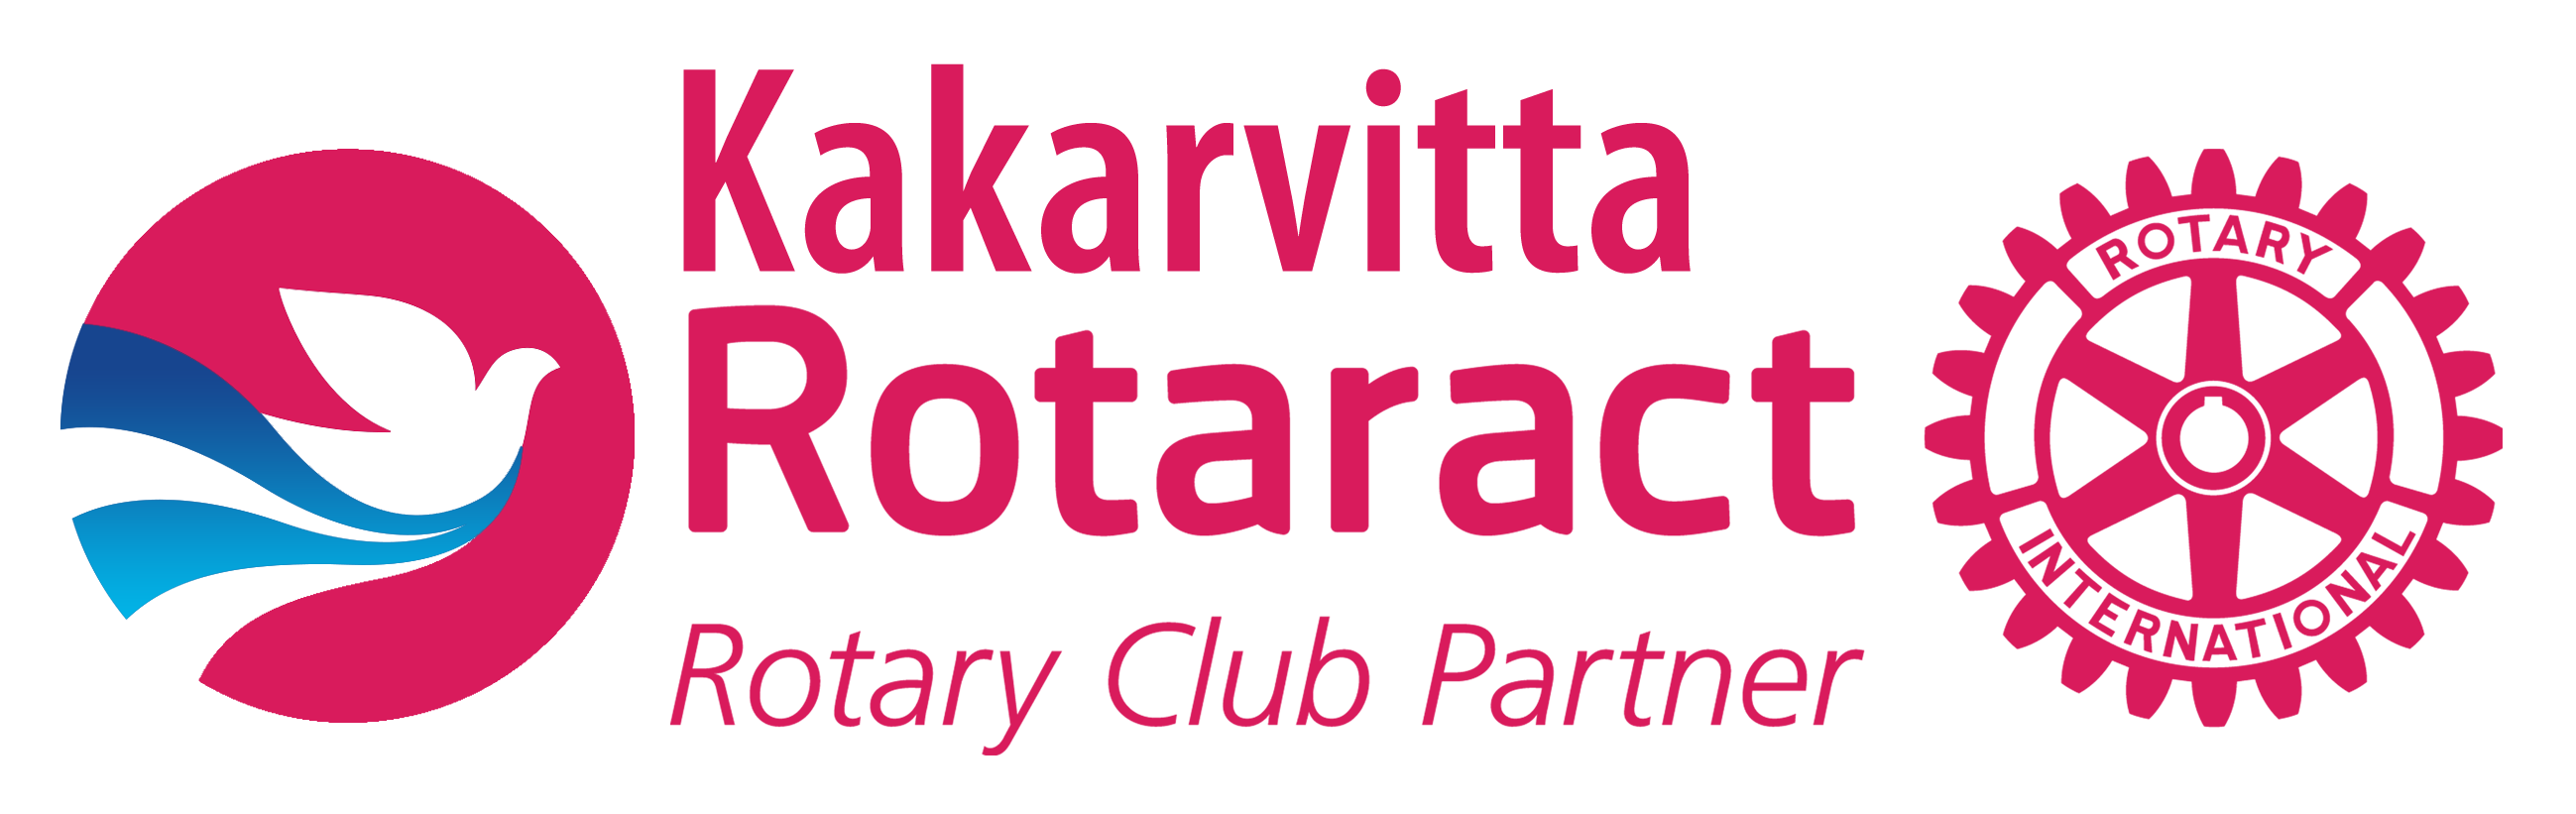 rotaract club kakarvitta new logo